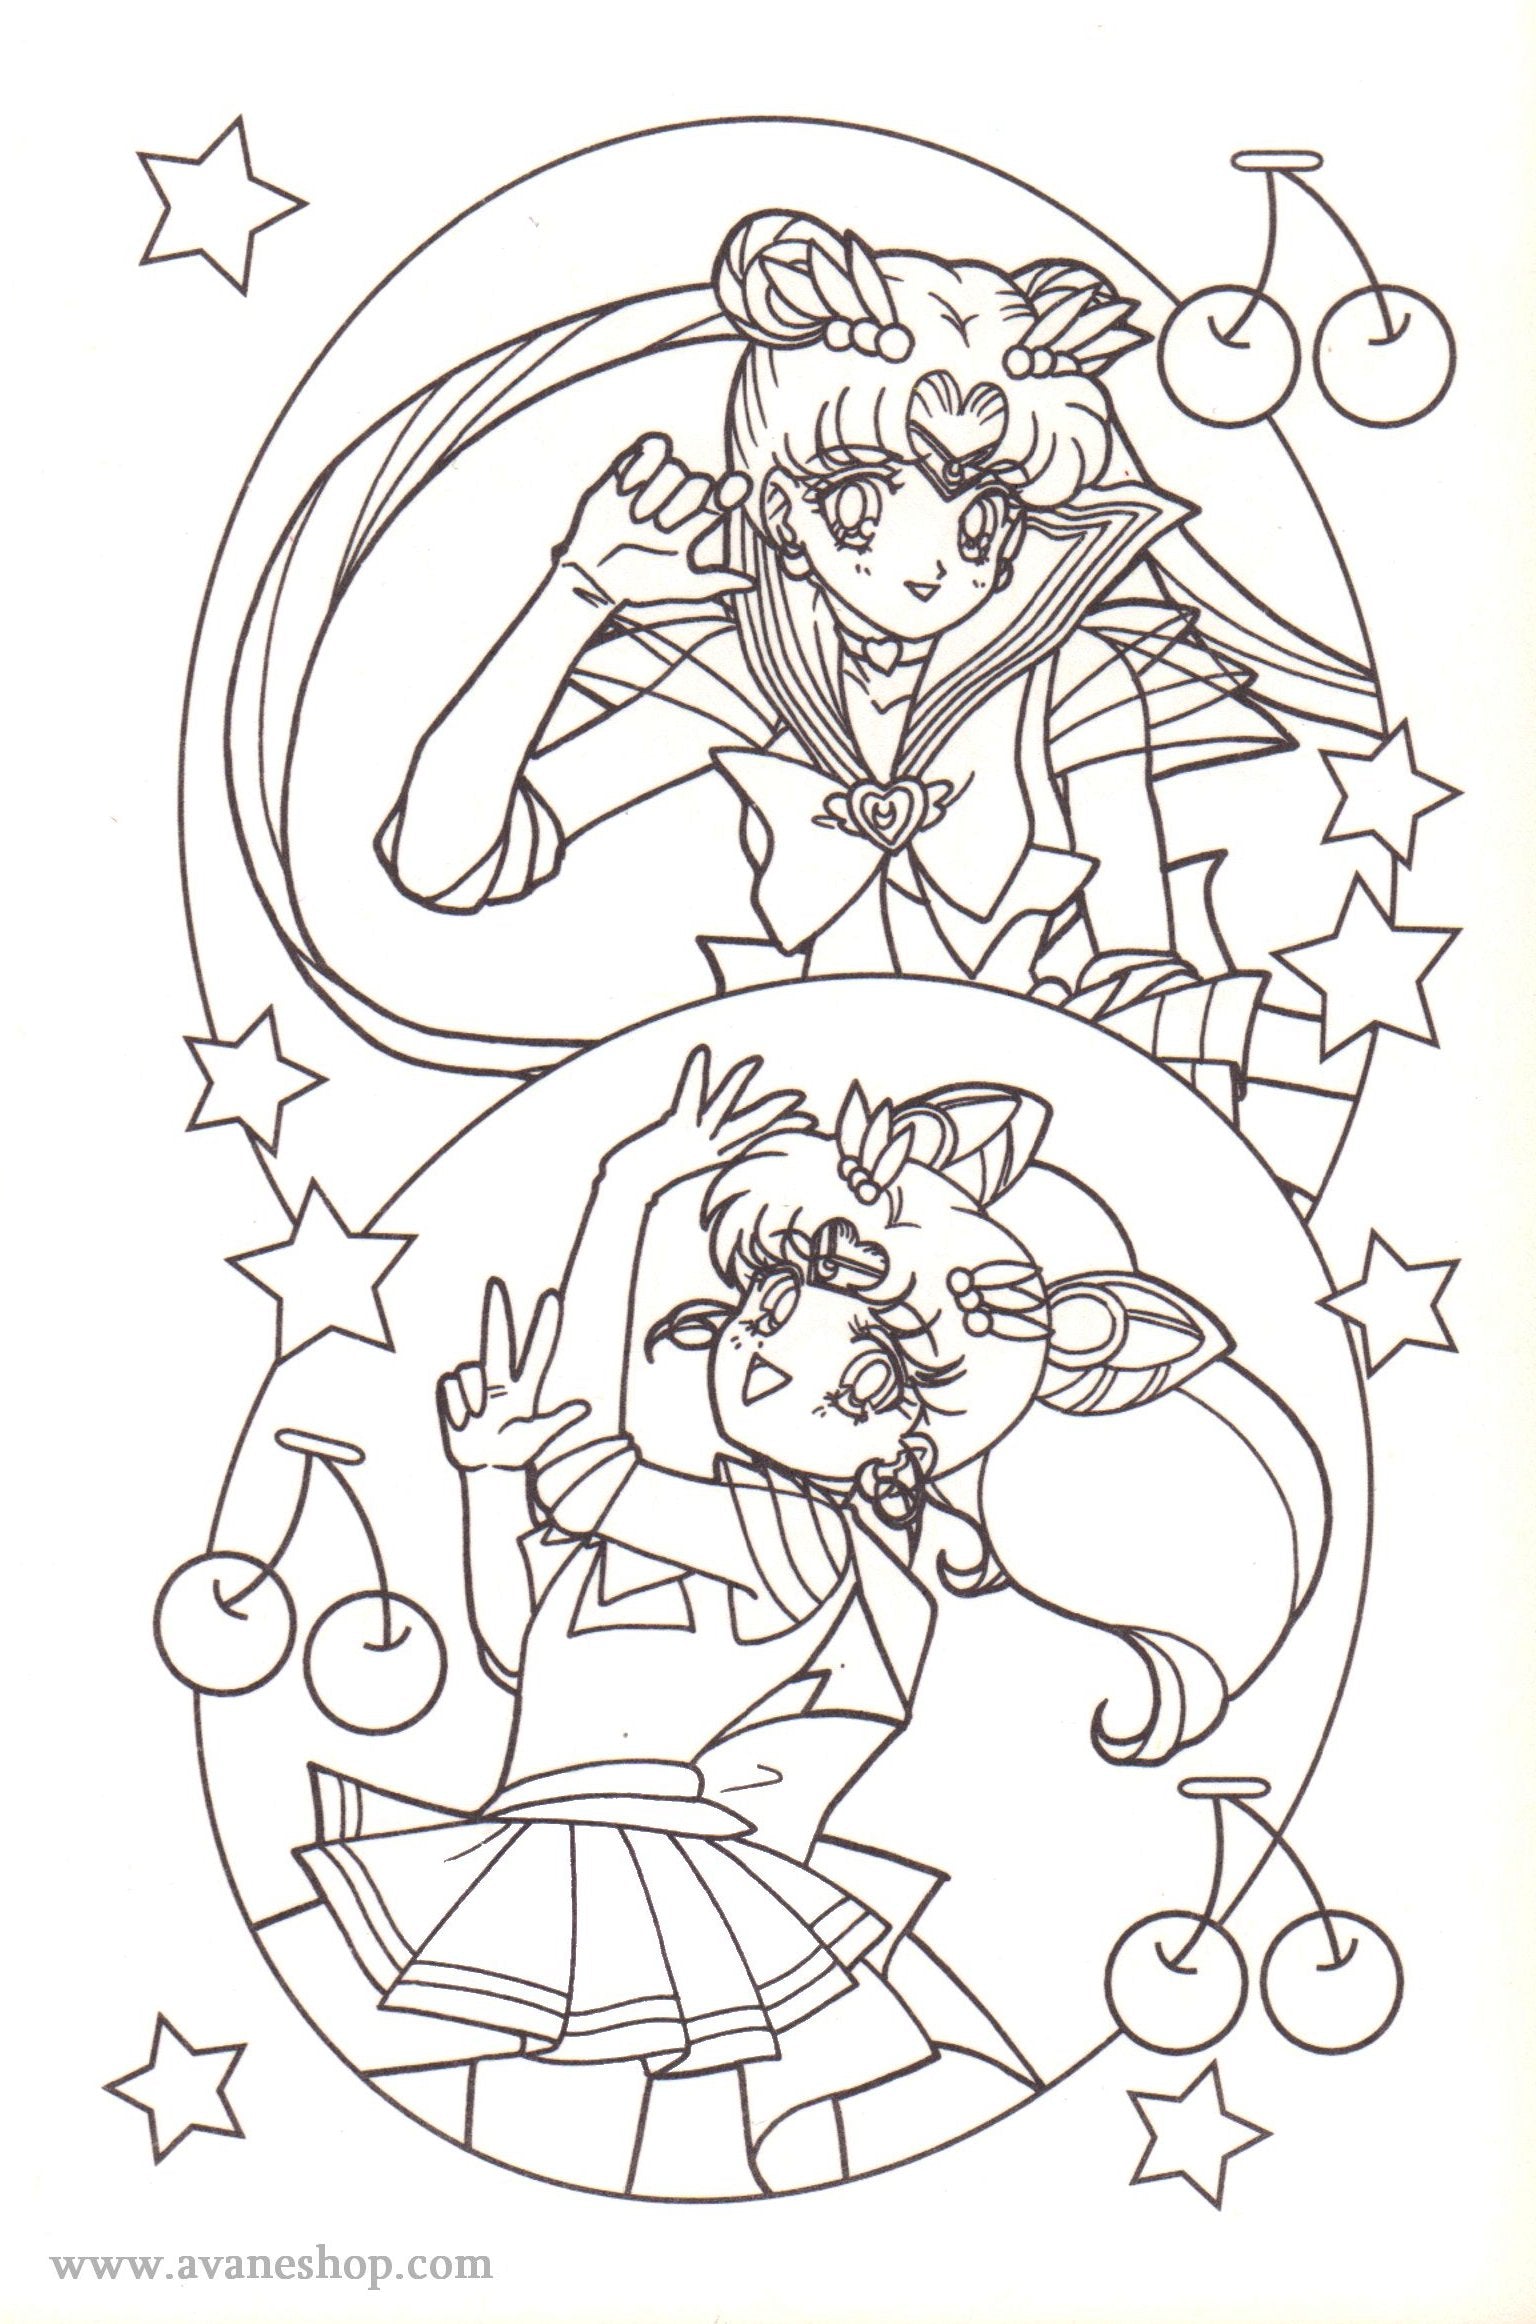 Sailor Moon Coloring Pages – Avane Shop